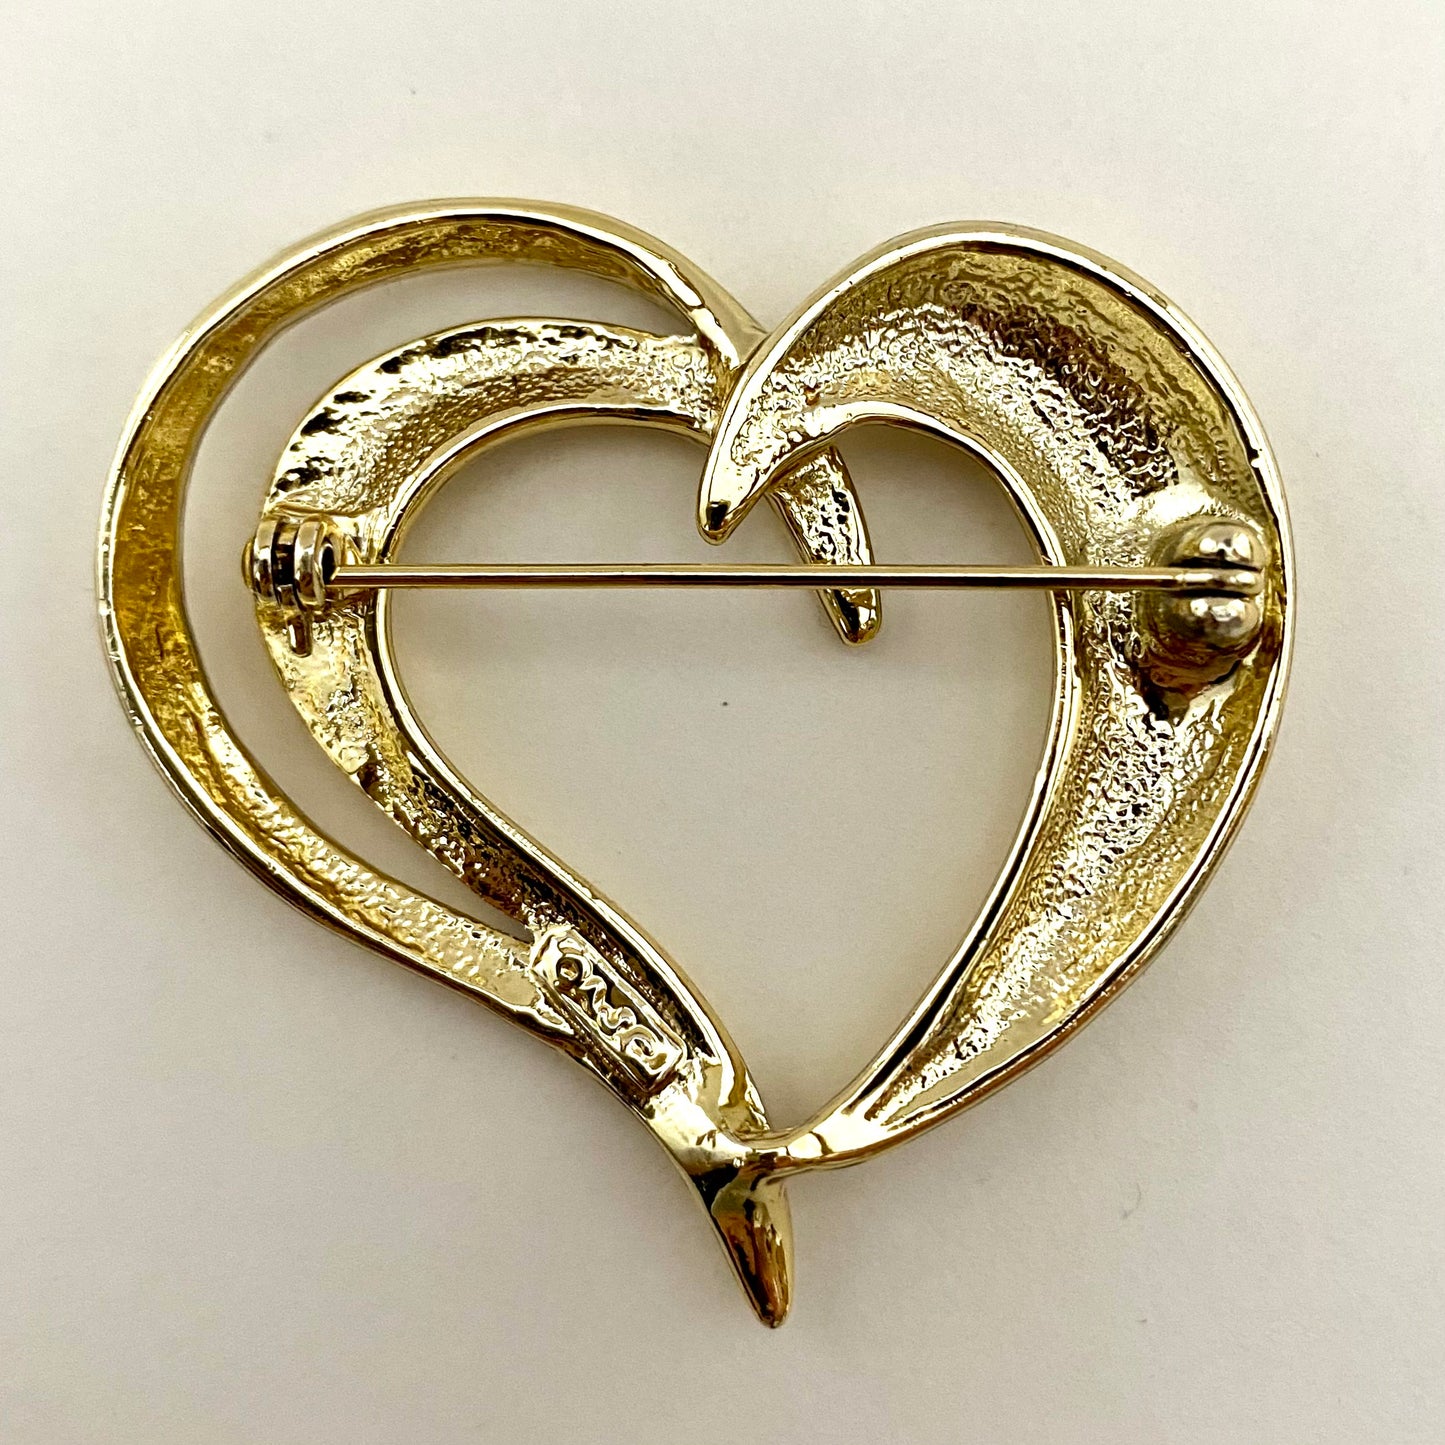 1980s AJC (American Jewelry Company) Heart Brooch